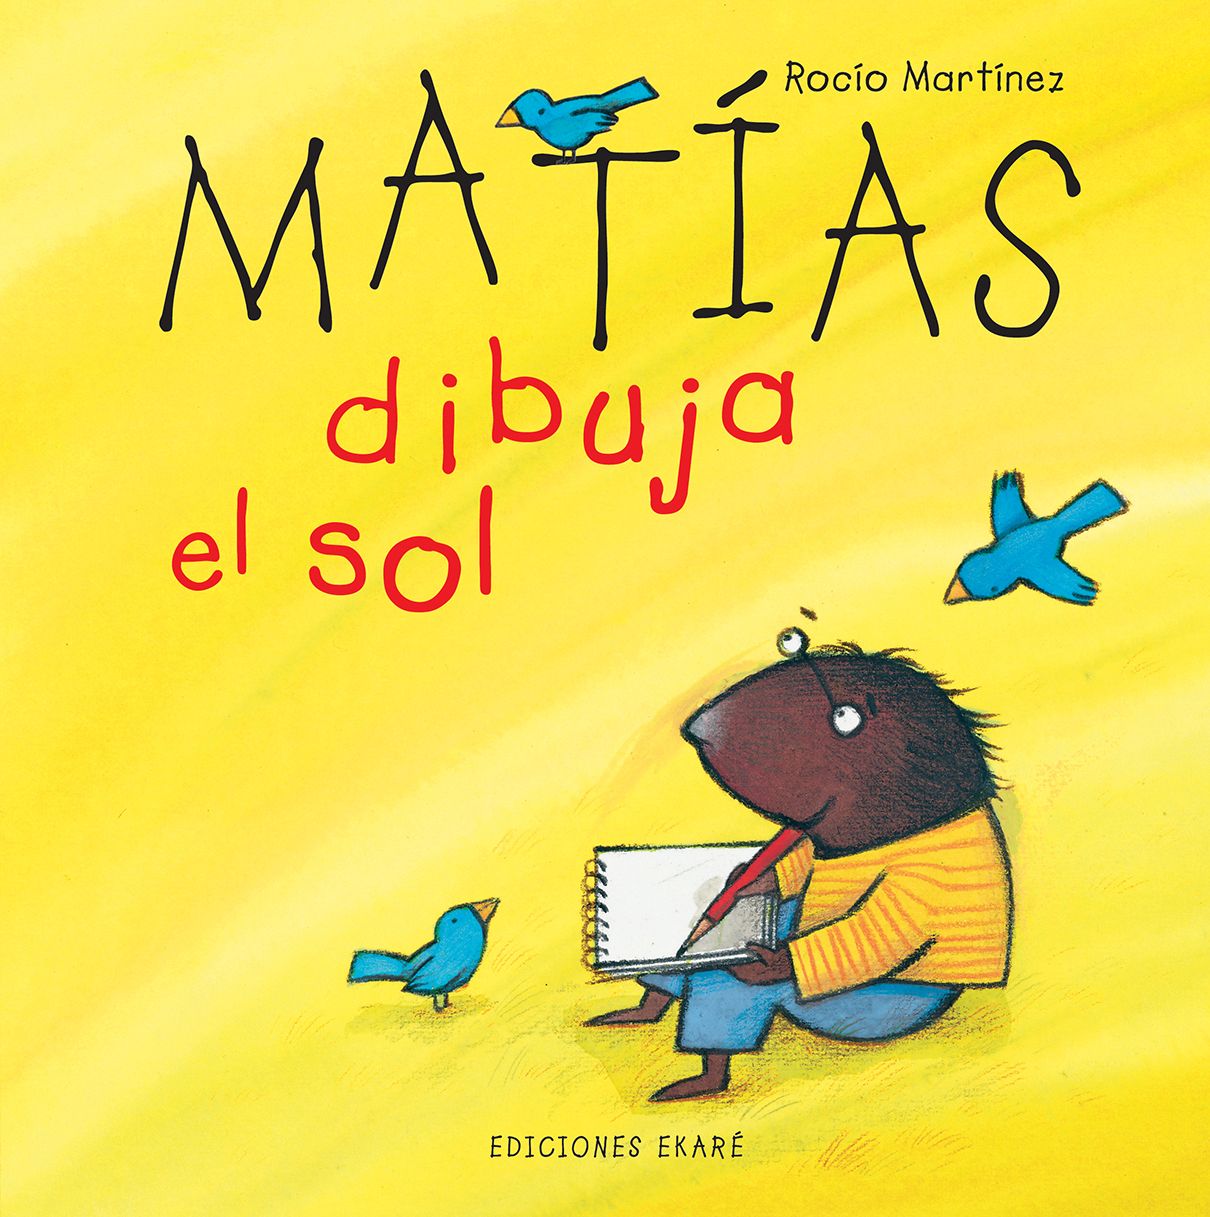 Matías dibuja el sol Cuentos - Embarazada - Maternidad - Embarazo - 9lunasshop.com